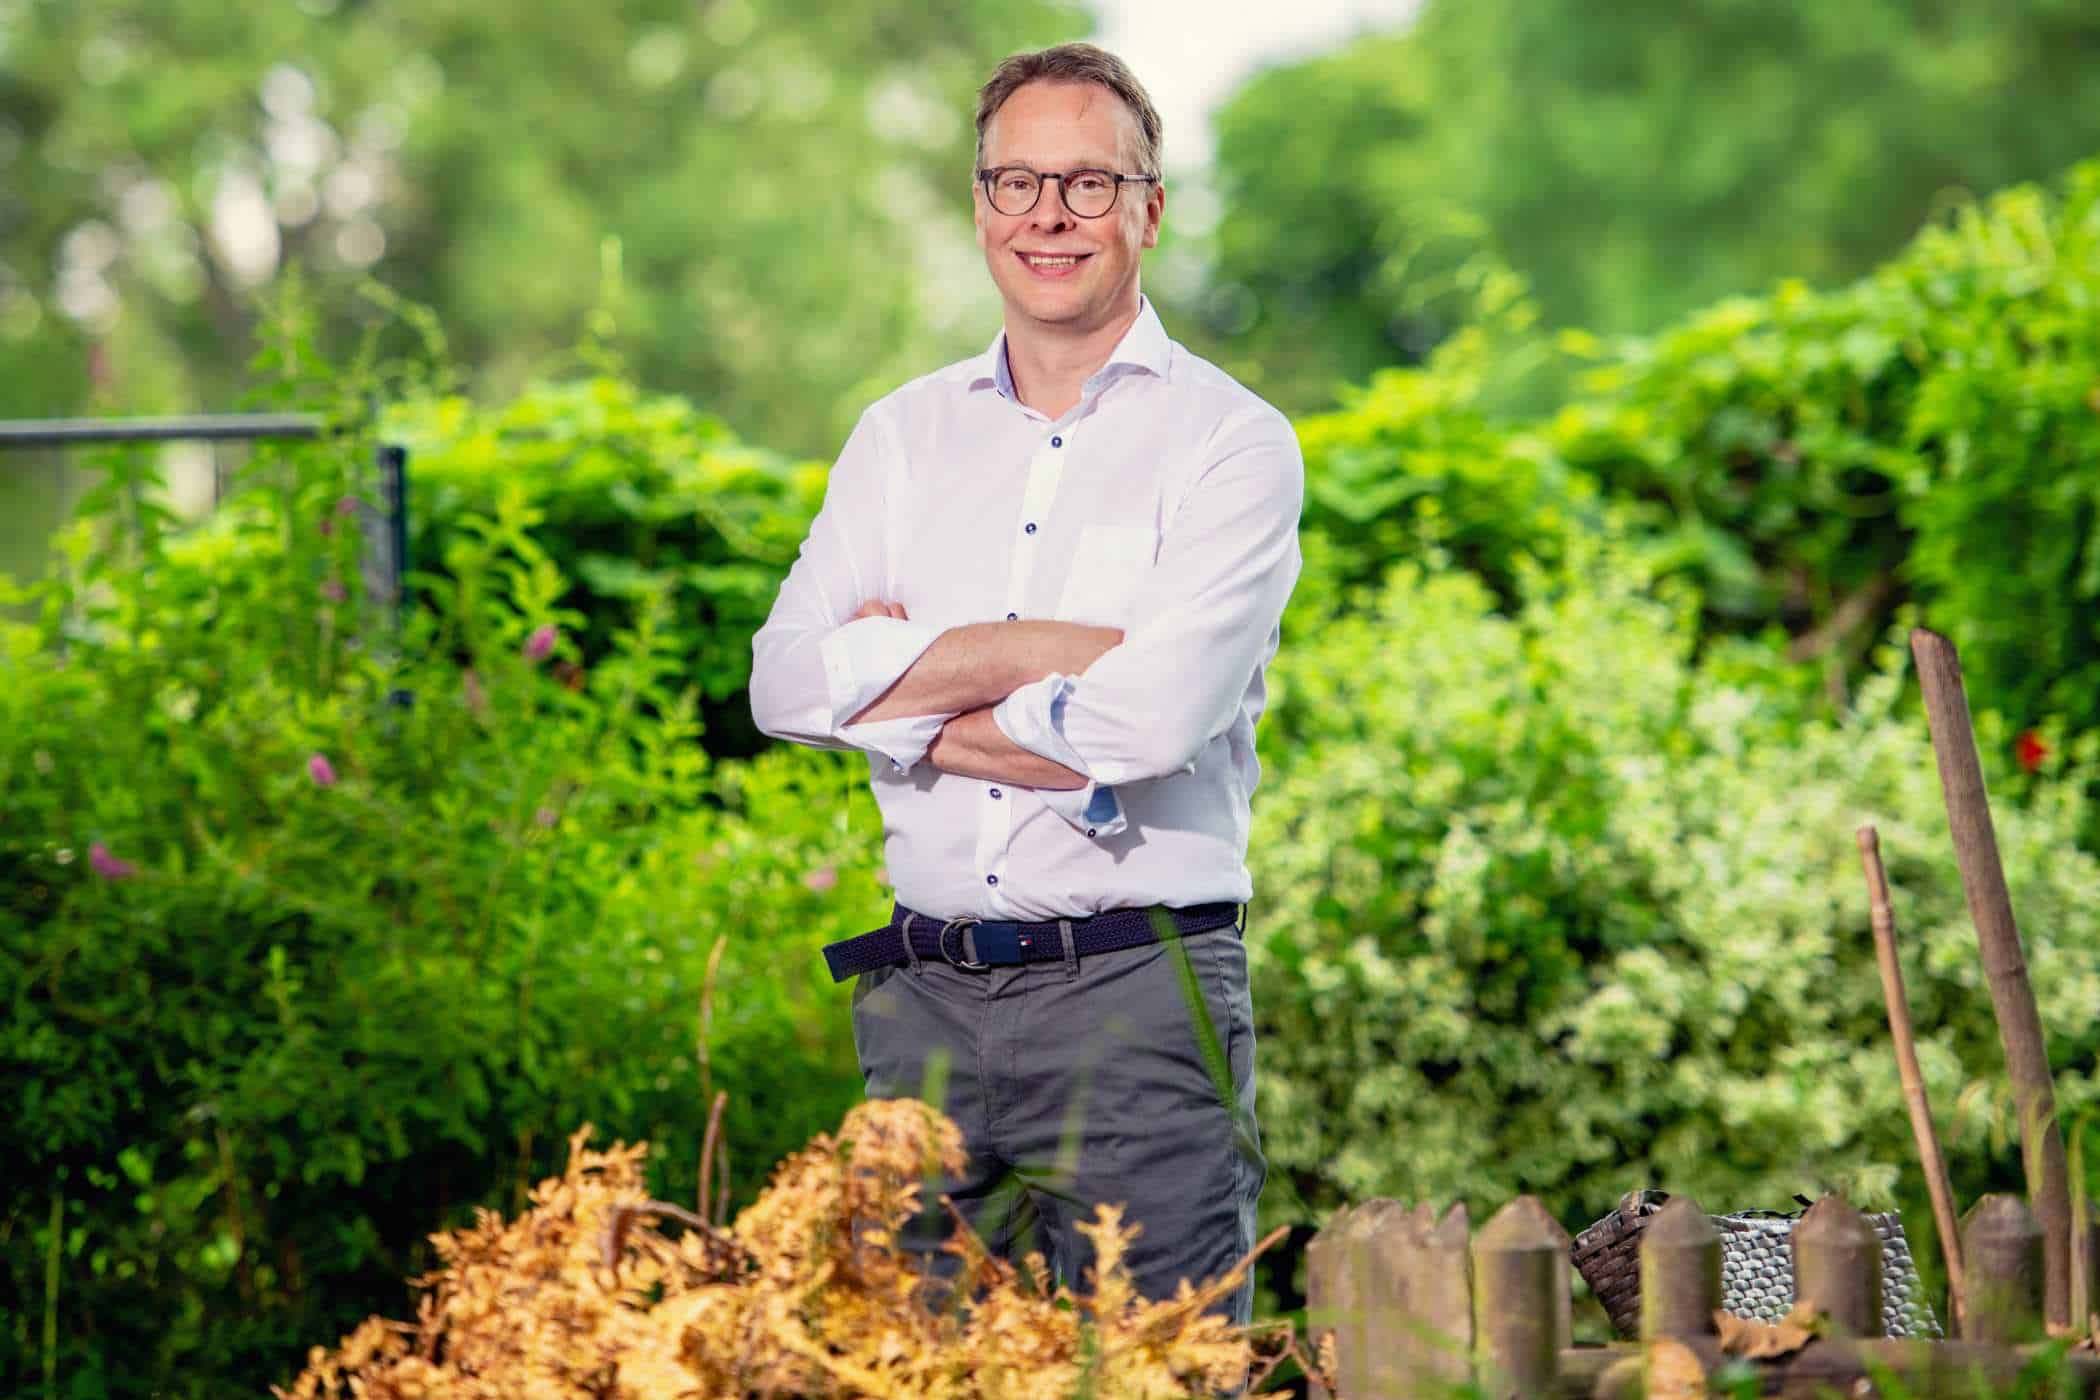 LebensWert 0809 - interviews-portraits, gastronomie, food-nomyblog Klaus Richter: „Ich wünsche mir, dass wir in der Branche ehrlicher mit Nachhaltigkeit umgehen“